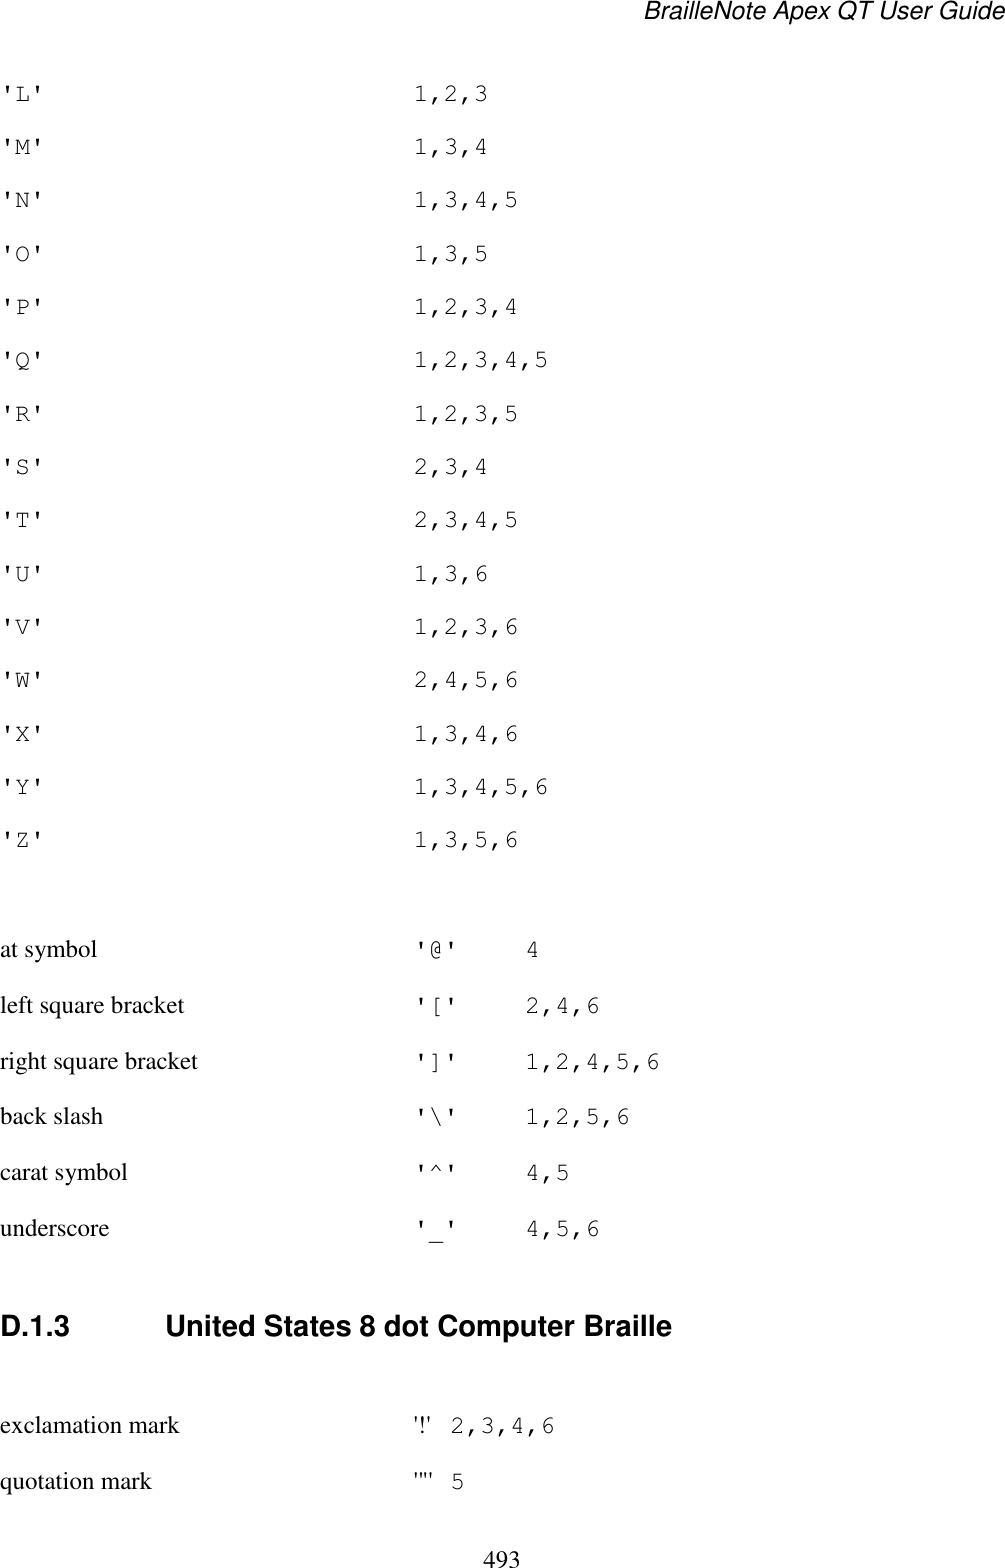 BrailleNote Apex QT User Guide  493  &apos;L&apos;  1,2,3 &apos;M&apos;  1,3,4 &apos;N&apos;  1,3,4,5 &apos;O&apos;  1,3,5 &apos;P&apos;  1,2,3,4 &apos;Q&apos;  1,2,3,4,5 &apos;R&apos;  1,2,3,5 &apos;S&apos;  2,3,4 &apos;T&apos;  2,3,4,5 &apos;U&apos;  1,3,6 &apos;V&apos;  1,2,3,6 &apos;W&apos;  2,4,5,6 &apos;X&apos;  1,3,4,6 &apos;Y&apos;  1,3,4,5,6 &apos;Z&apos;  1,3,5,6  at symbol  &apos;@&apos;  4 left square bracket  &apos;[&apos;  2,4,6 right square bracket  &apos;]&apos;  1,2,4,5,6 back slash  &apos;\&apos;  1,2,5,6 carat symbol  &apos;^&apos;  4,5 underscore  &apos;_&apos;  4,5,6  D.1.3  United States 8 dot Computer Braille  exclamation mark  &apos;!&apos;  2,3,4,6 quotation mark  &apos;&quot;&apos;  5 